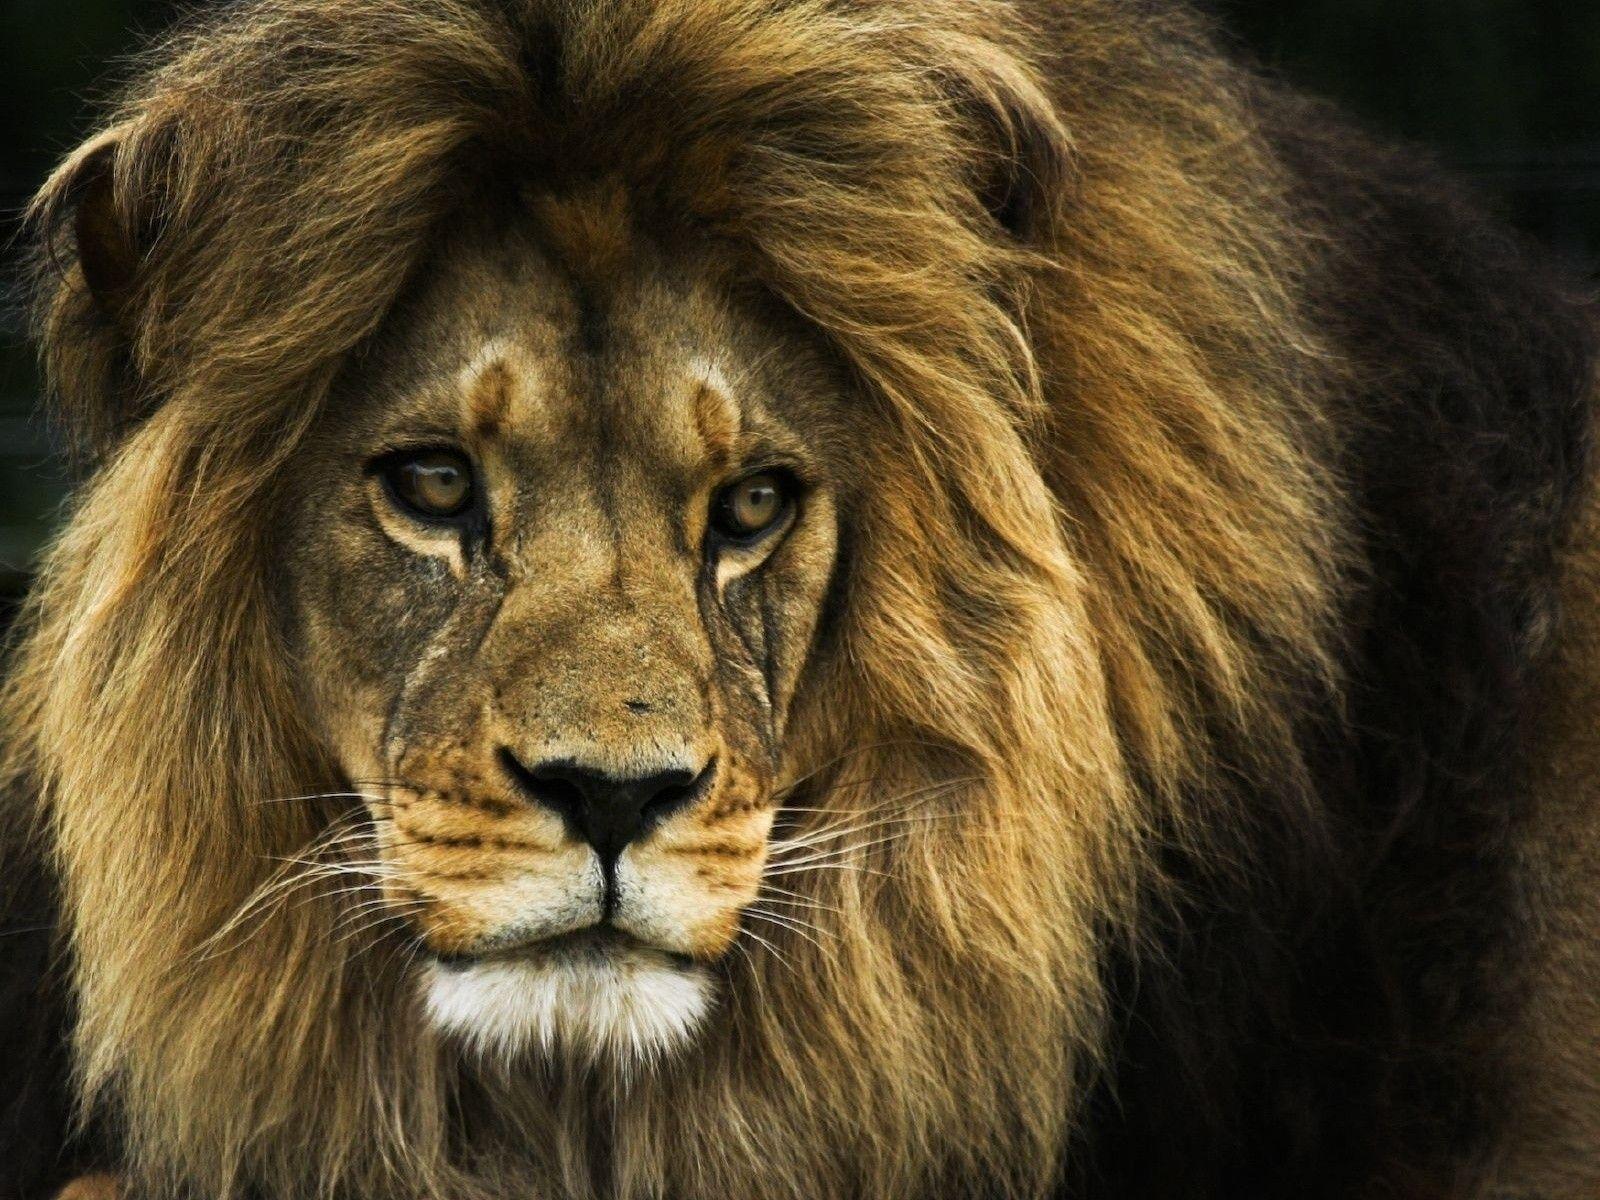 Desktop picture of a lion face wallpaper